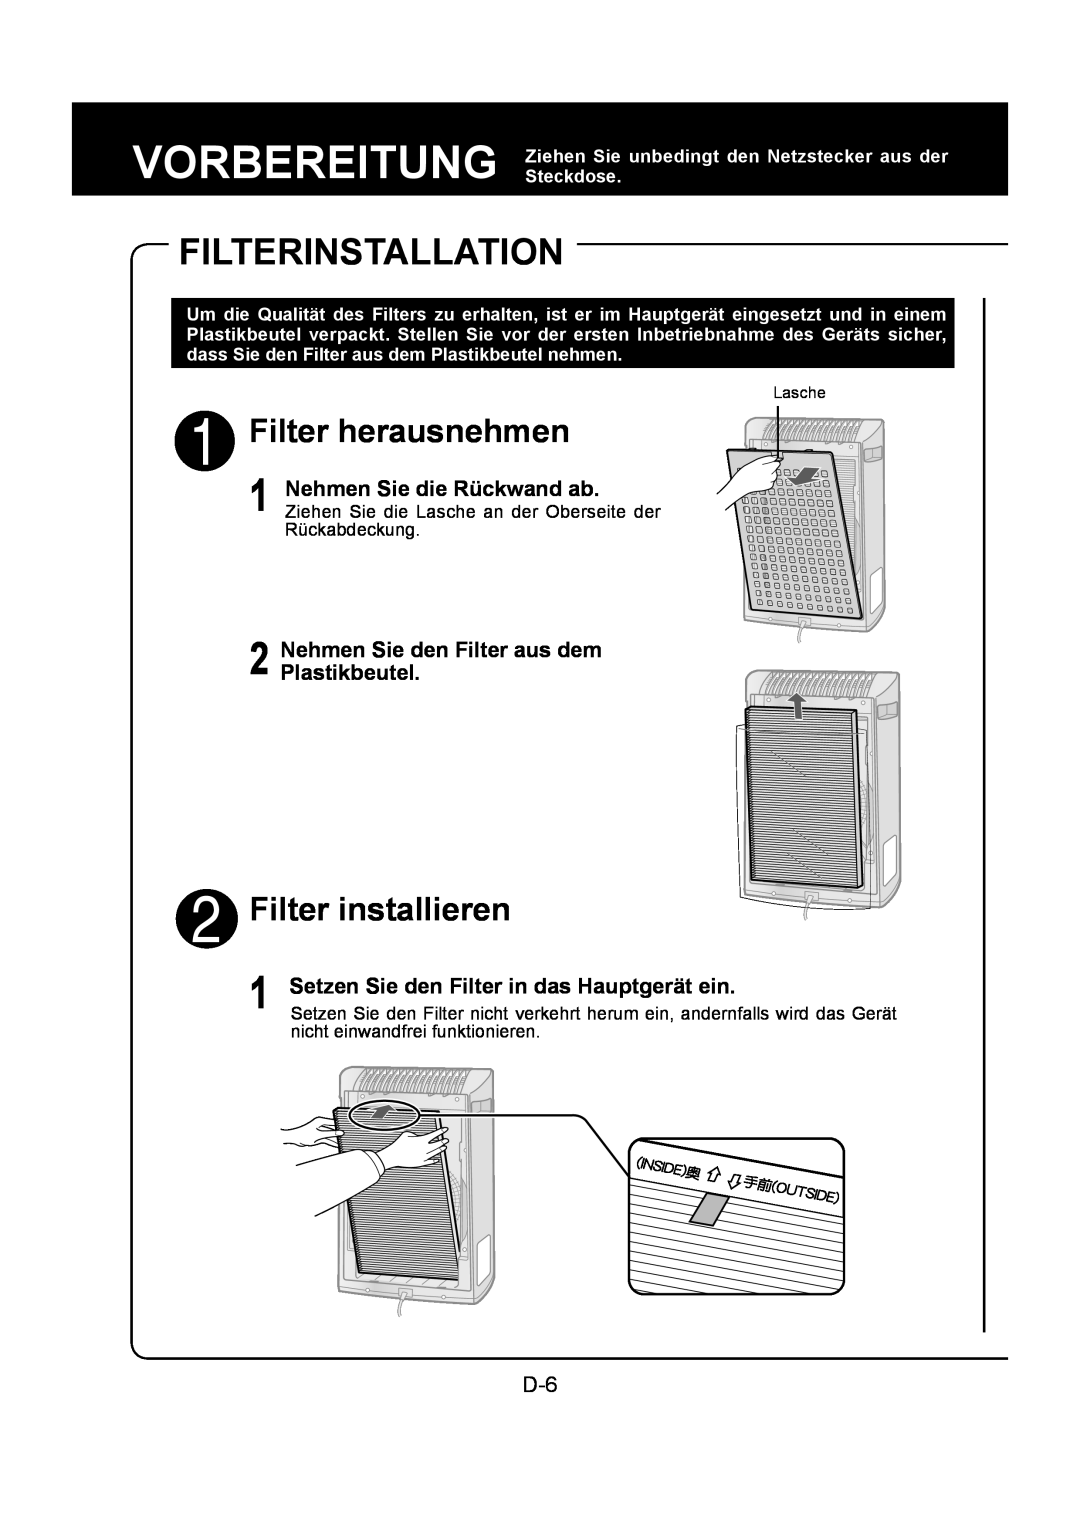 Sharp FU-Y30EU Filterinstallation, Filter herausnehmen, Filter installieren, Nehmen Sie den Filter aus dem Plastikbeutel 